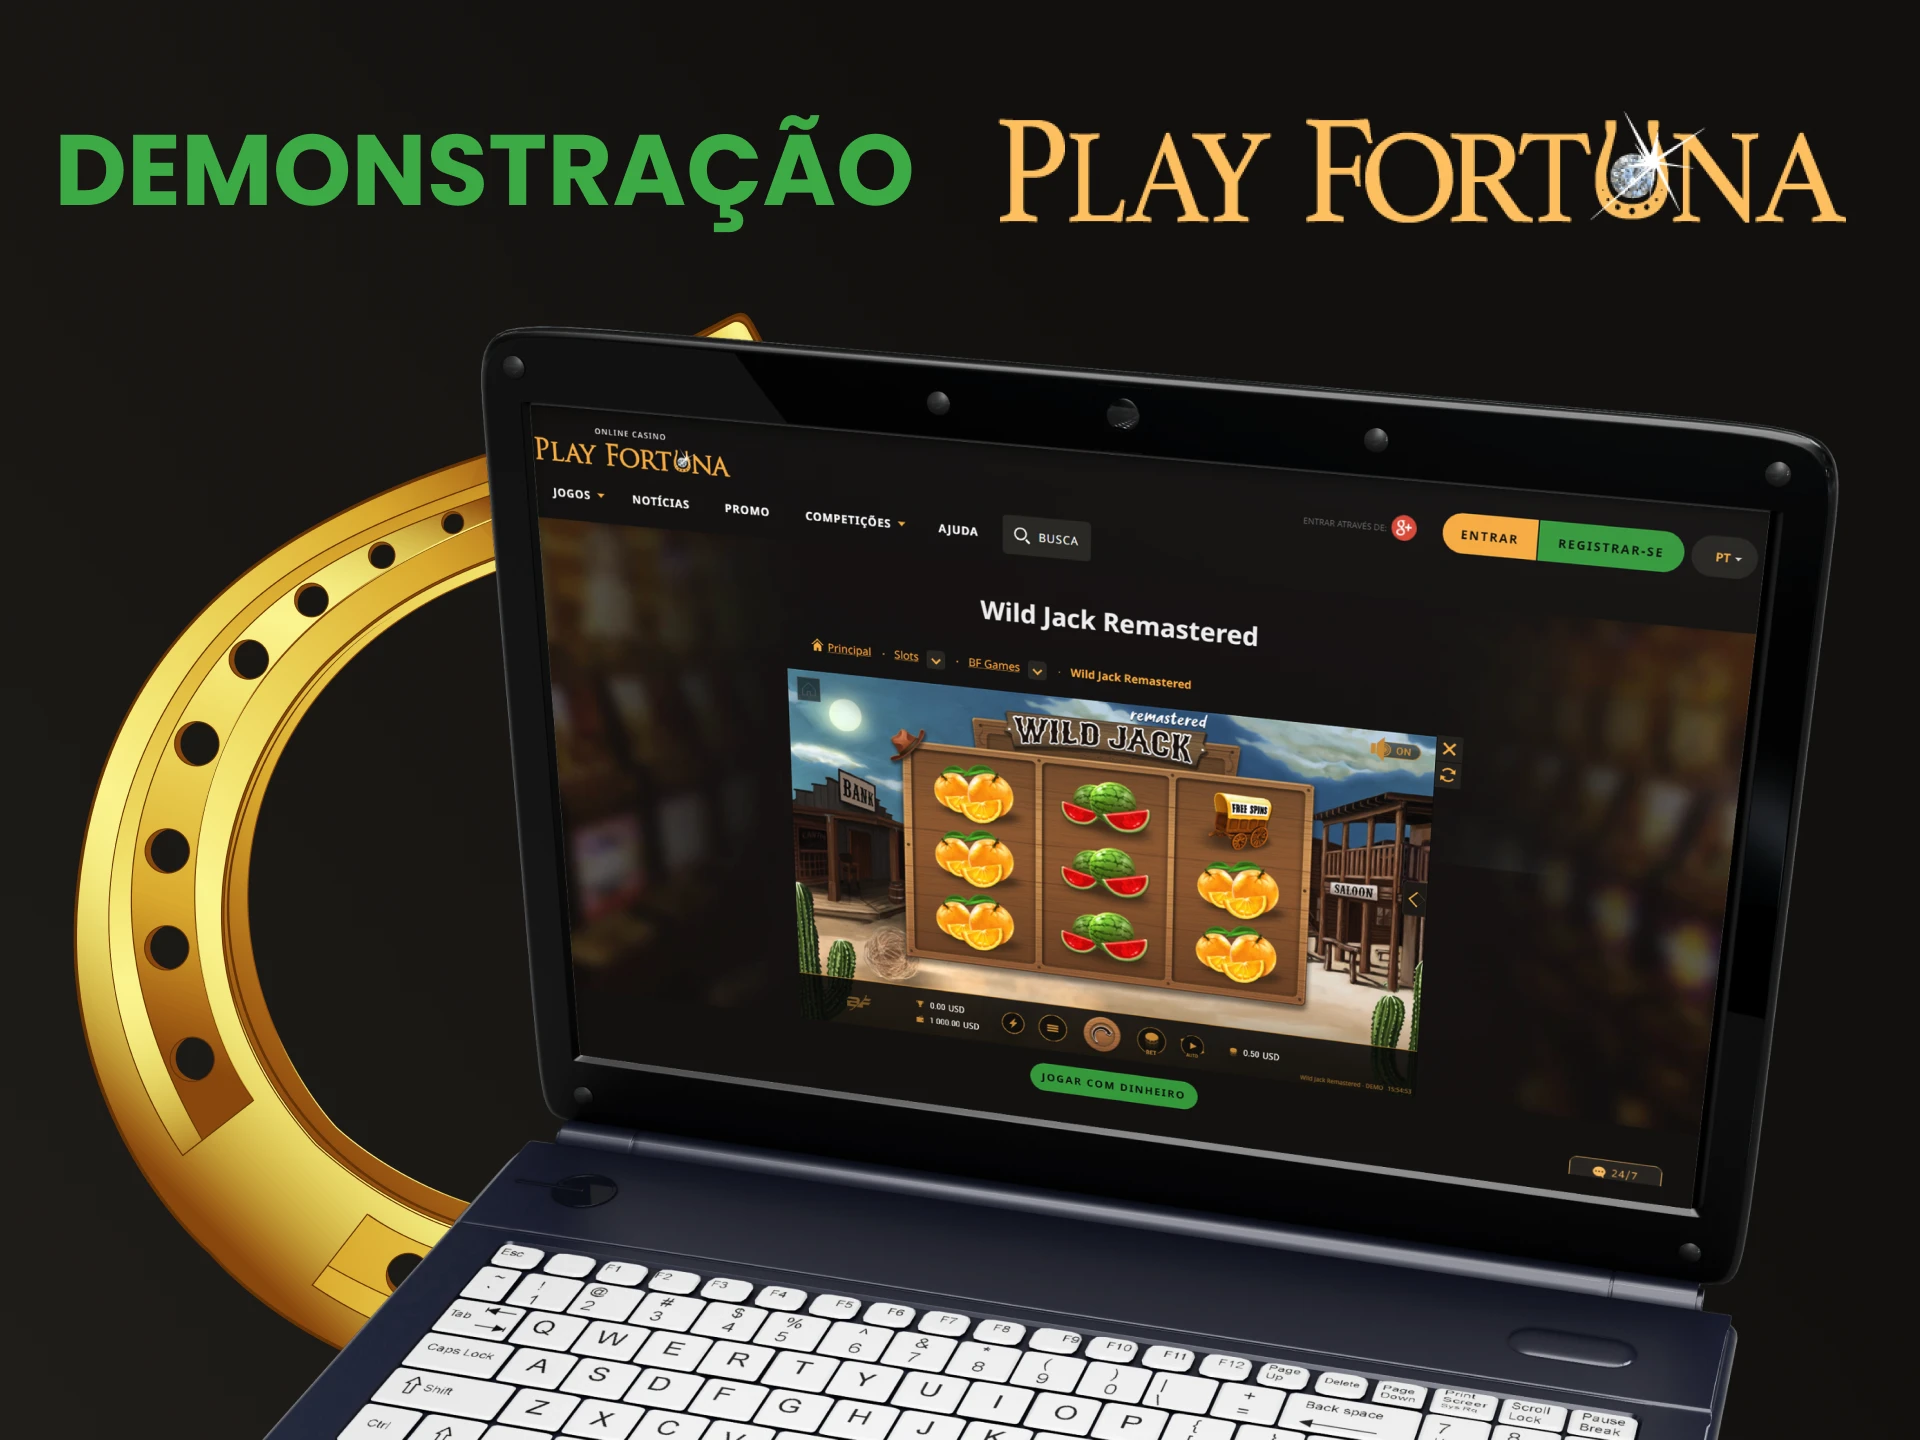 Pratique a versão demo dos jogos de jackpot no Play Fortuna.